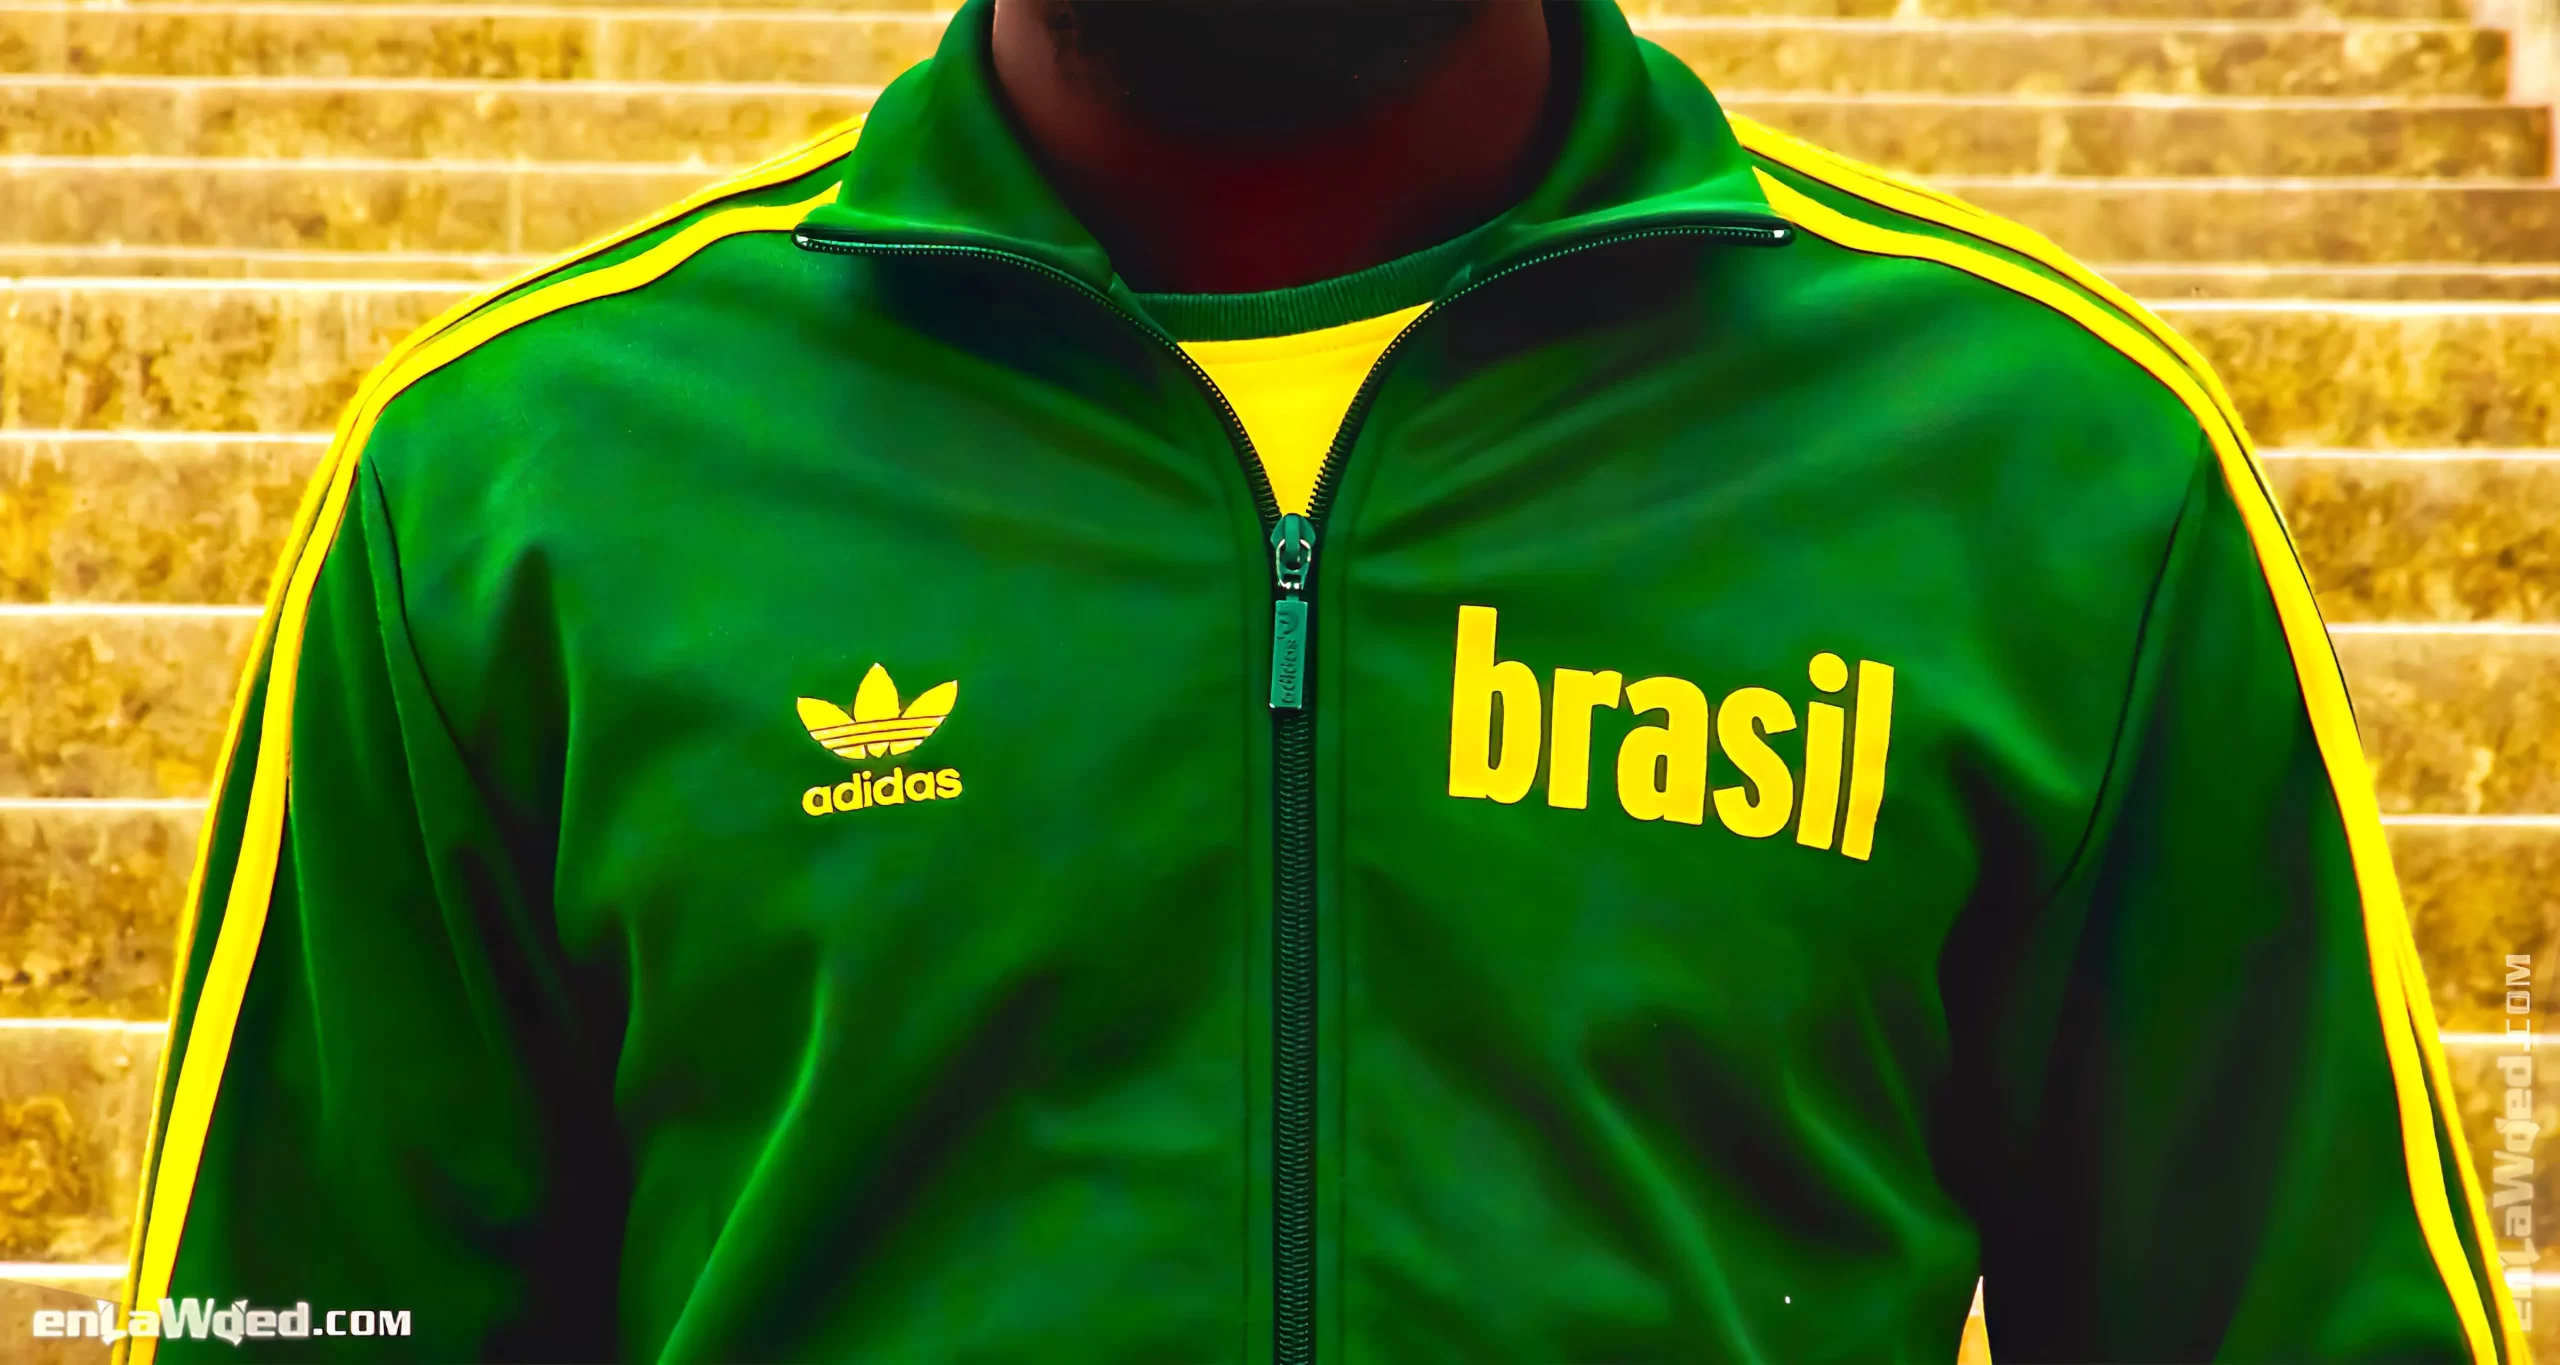 Men’s 2006 Brasil ’70 Track Top by Adidas Originals: Remarkable (EnLawded.com file #lmchk90251ip2y121984kg9st)